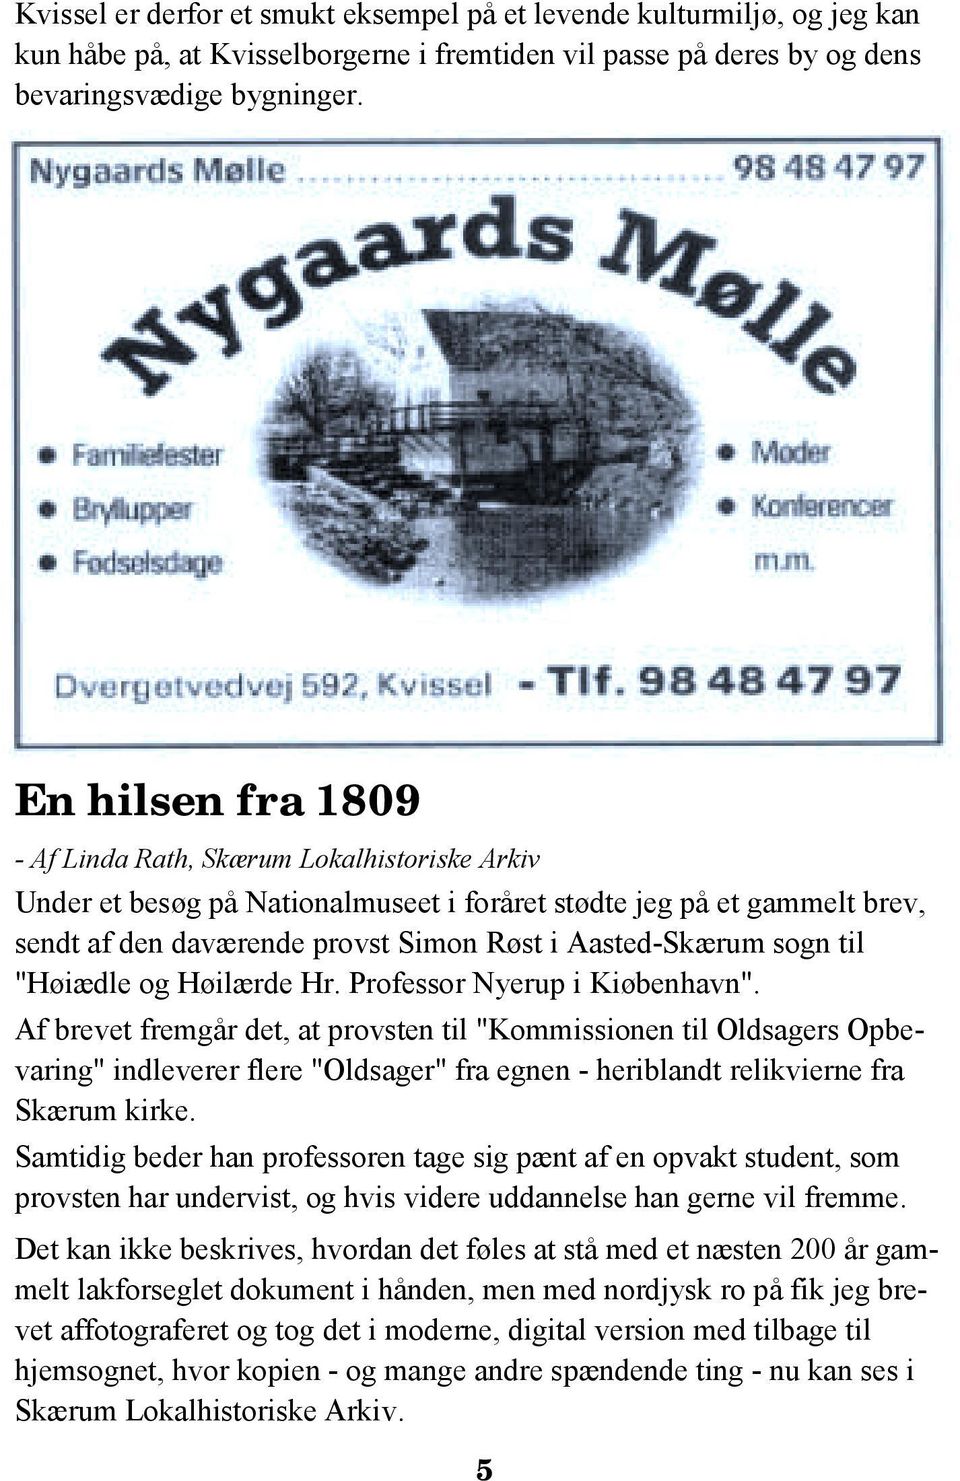 sogn til "Høiædle og Høilærde Hr. Professor Nyerup i Kiøbenhavn".